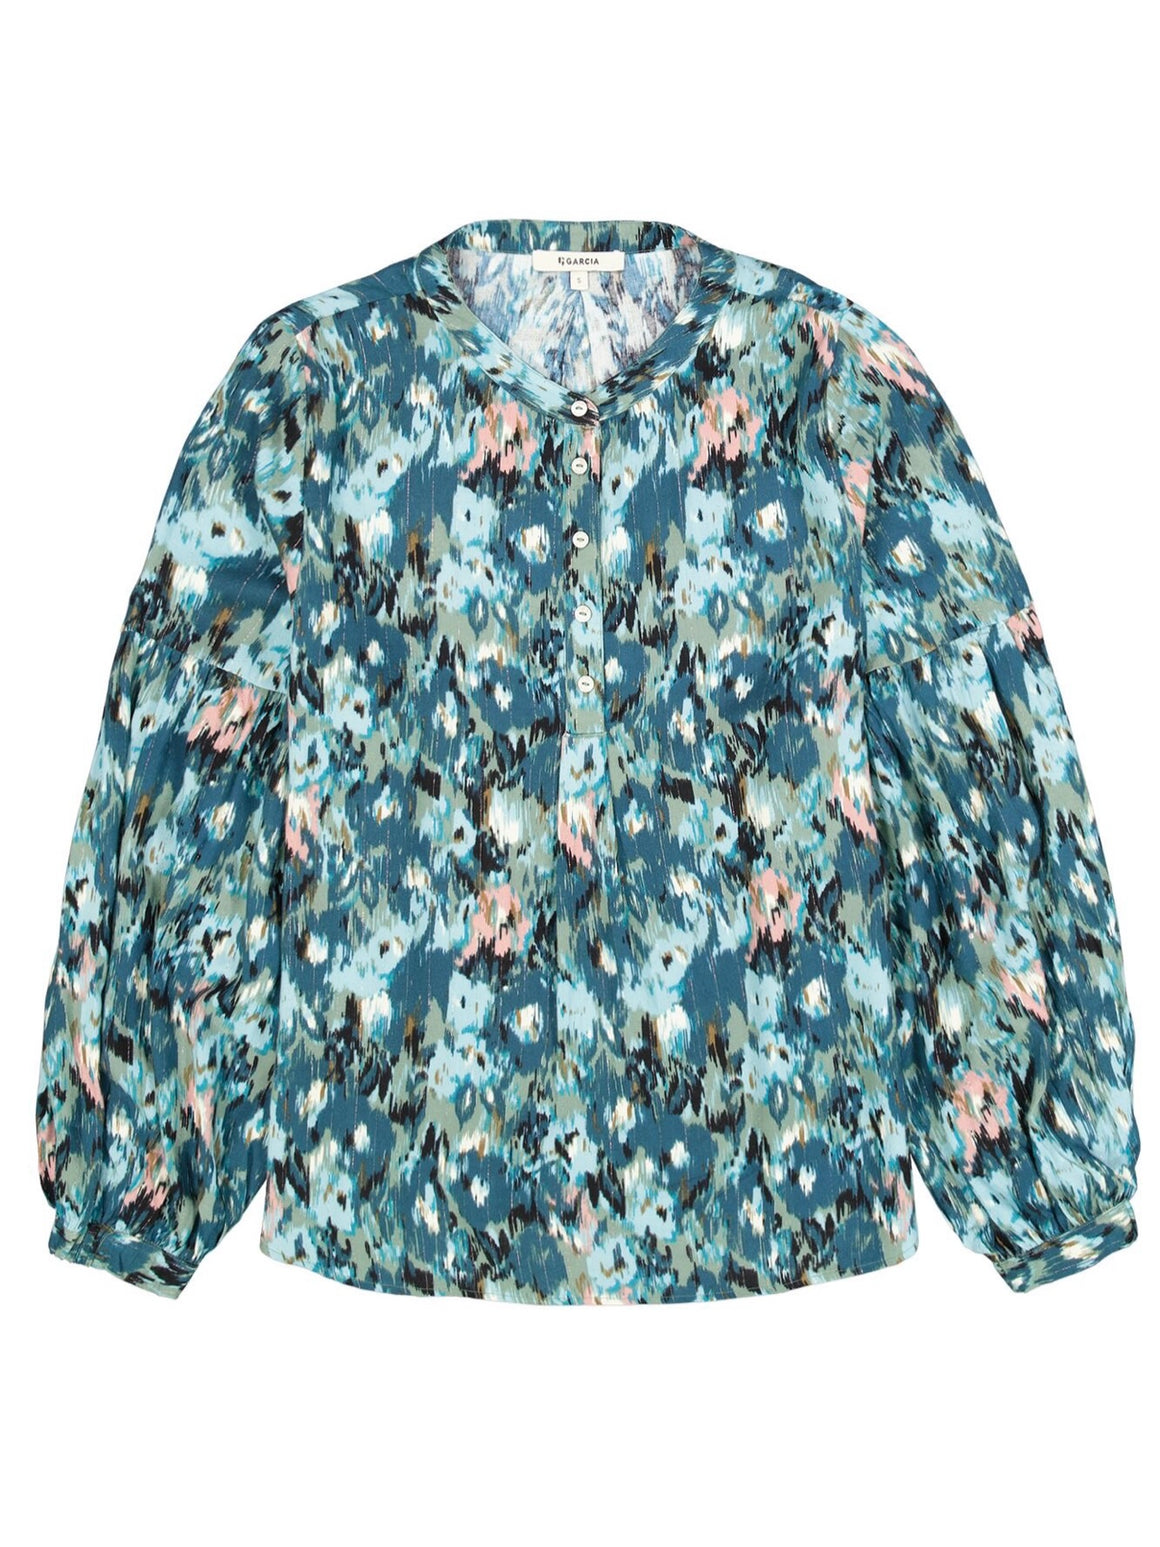 Garcia Shirt-Misty Fields | NZ womens clothing | Trio Boutique Geraldine